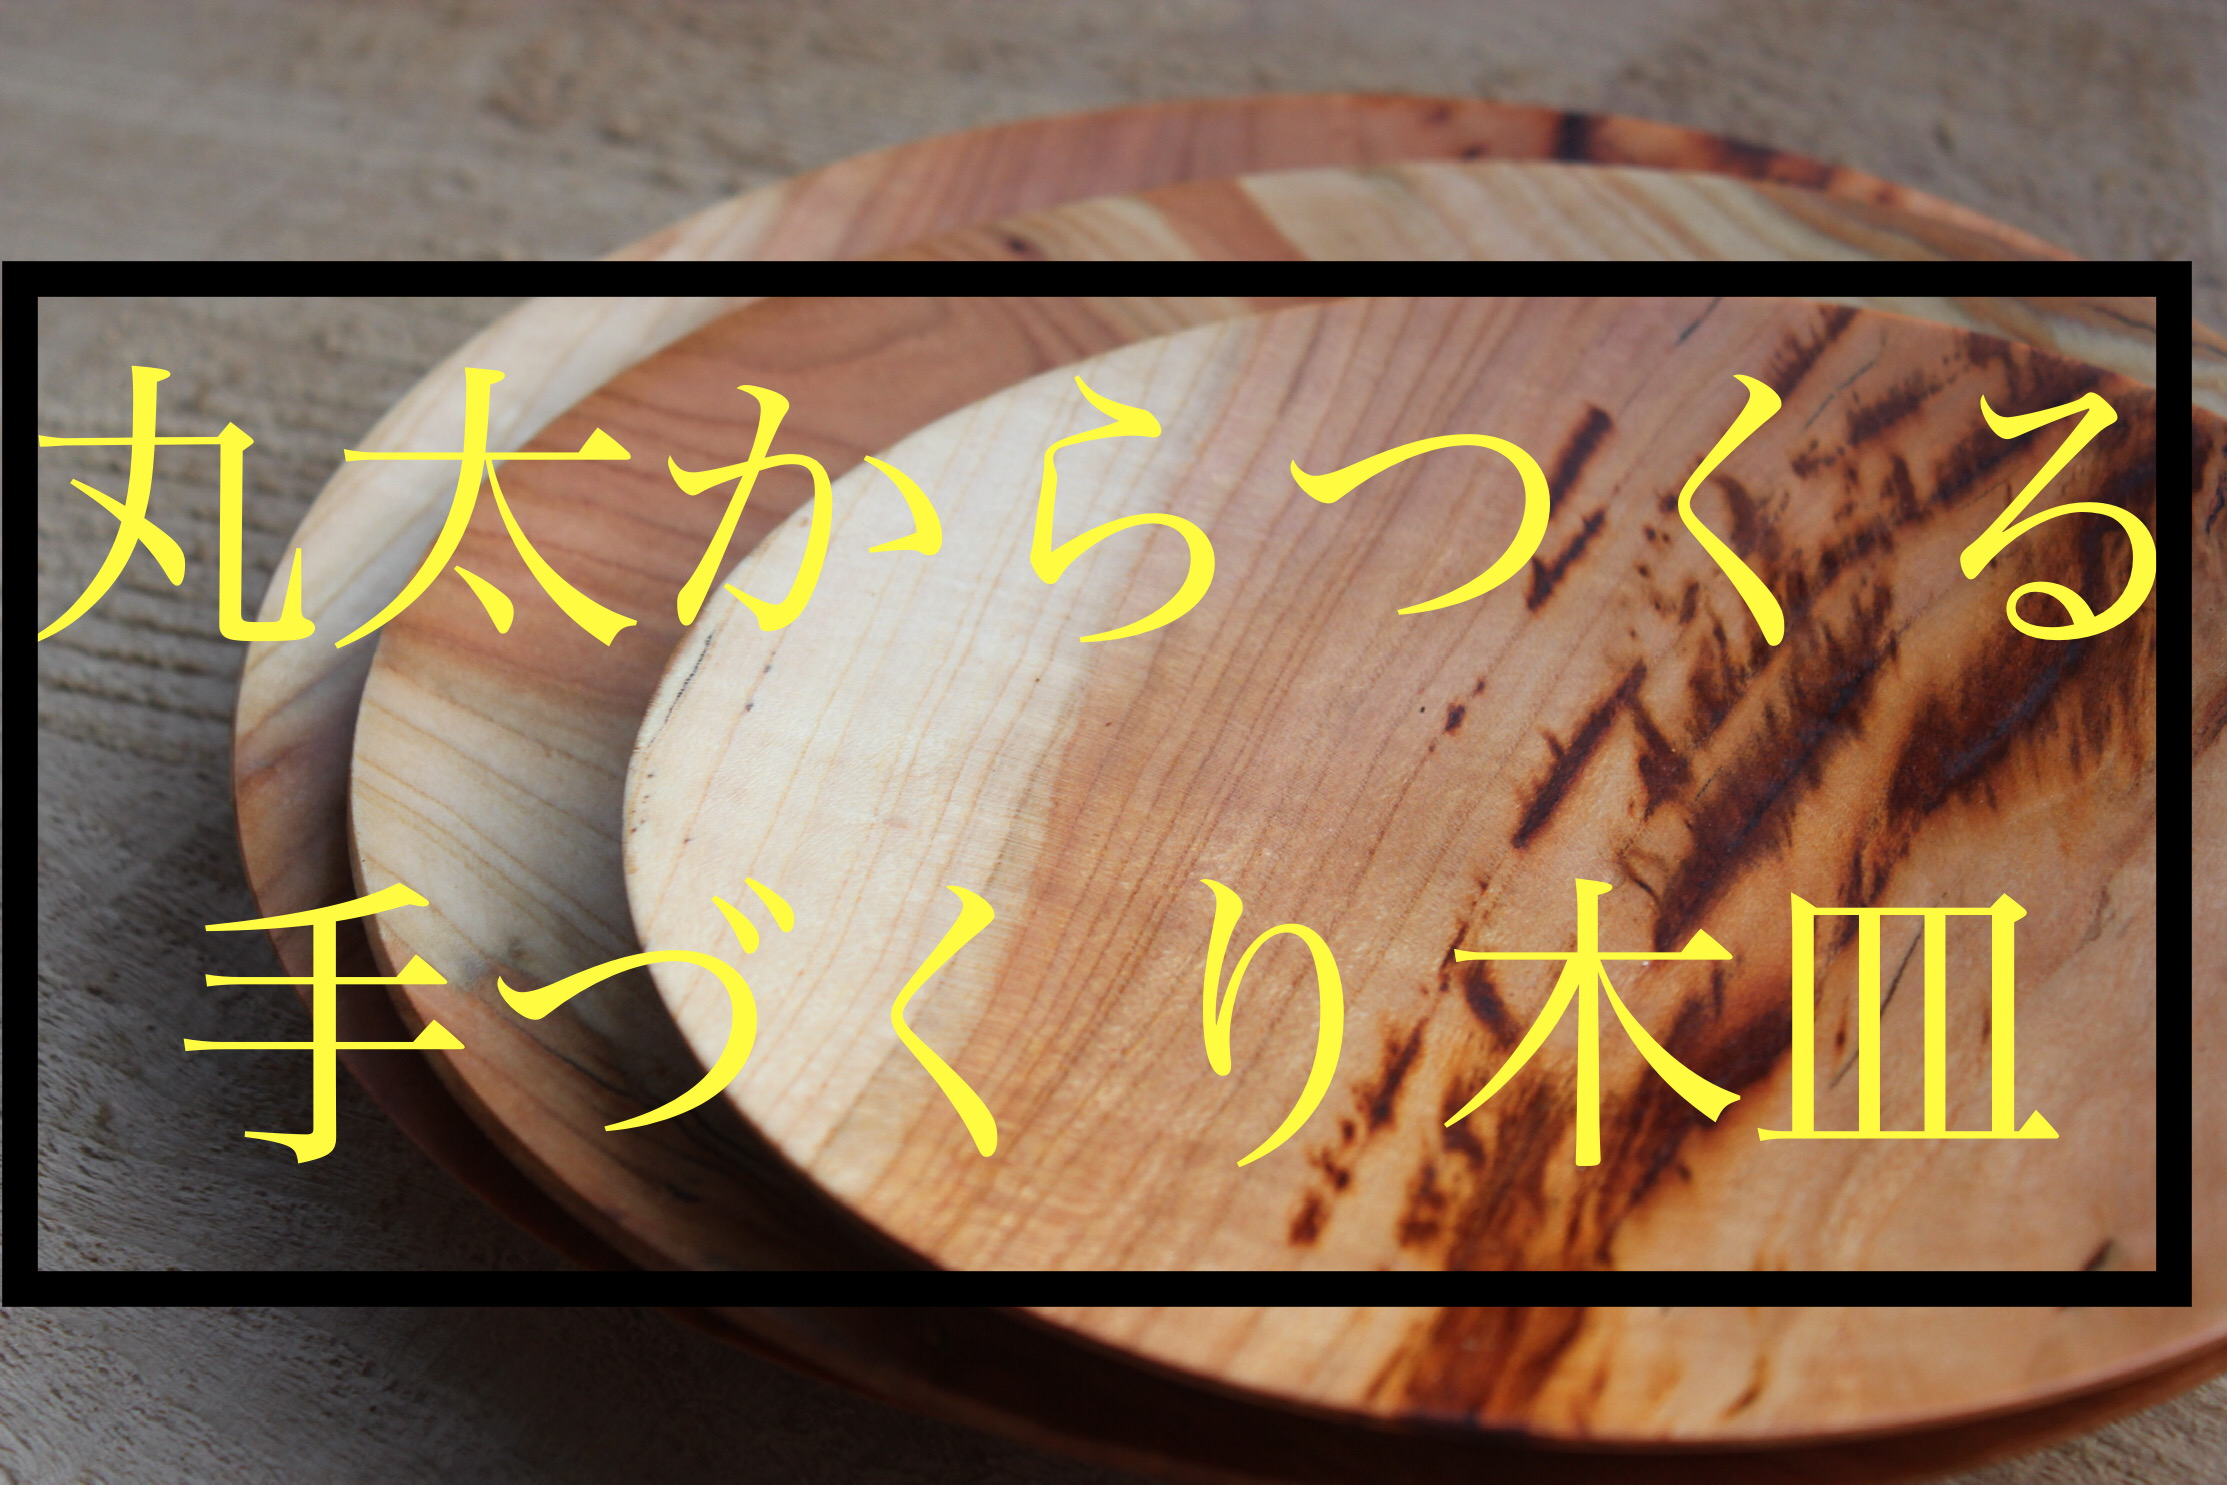 【生木の木工】桜の生木丸太をチェーンソーでギュンギュン捌いて美しい木のお皿を手づくりする動画をアップしました。